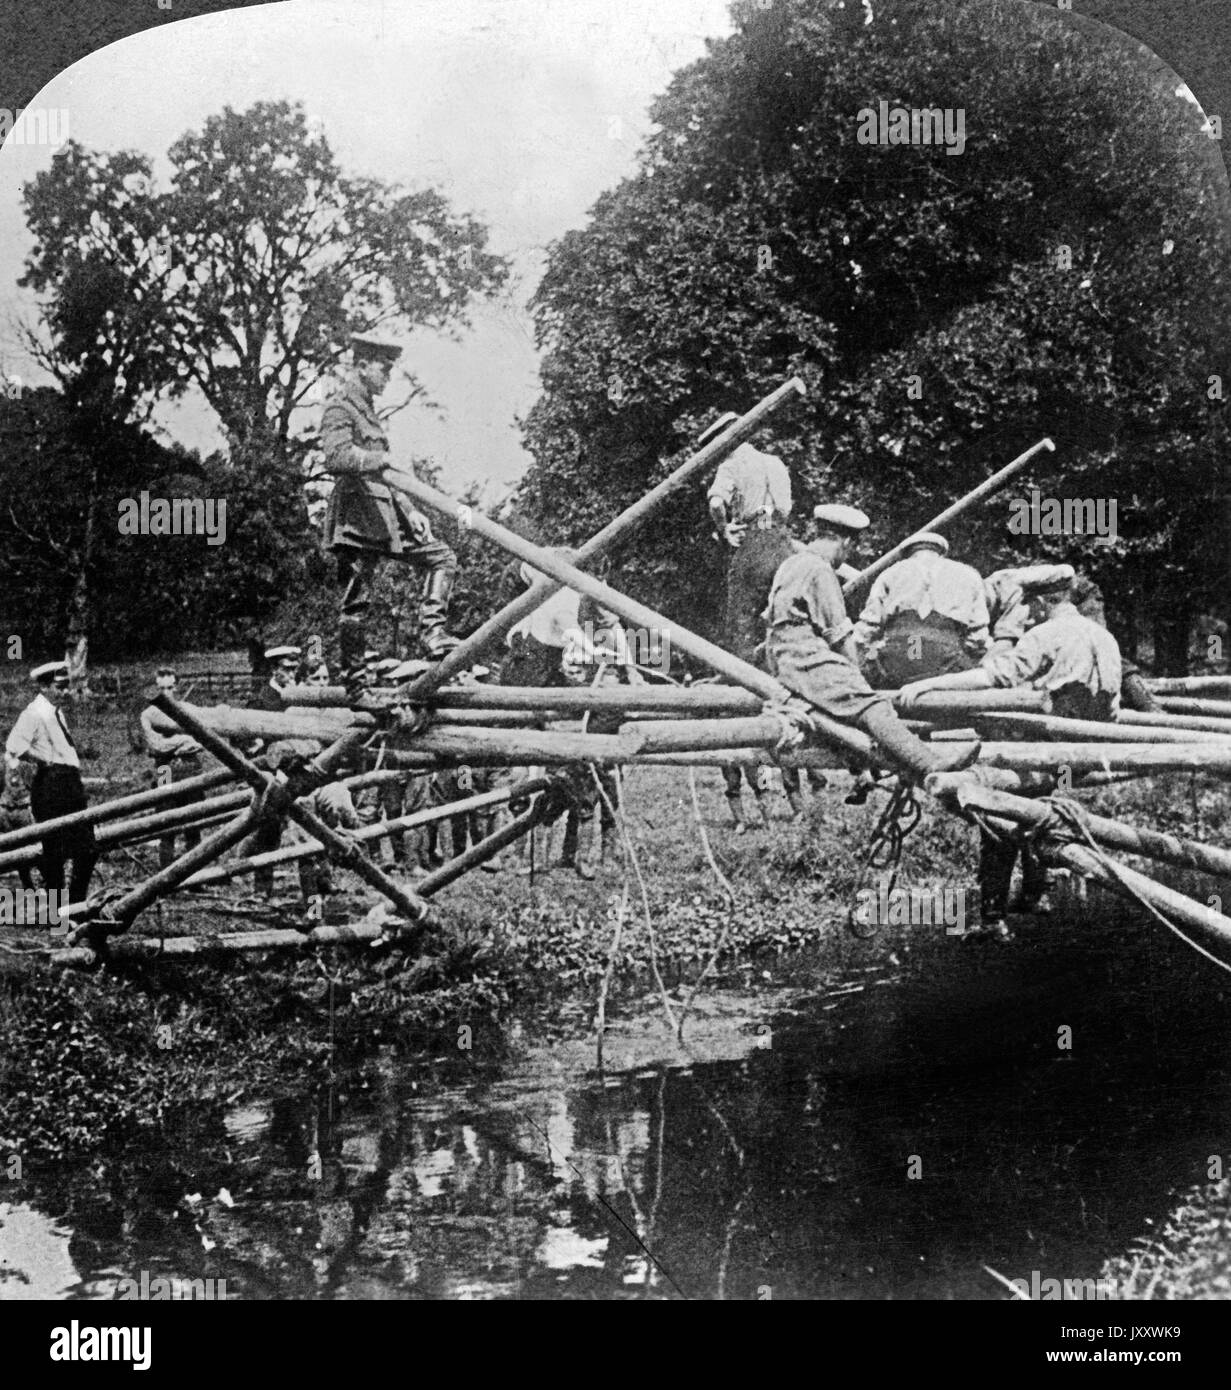 Errichten einer provisorischen Brücke für leichte Transporte, Frankreich 1915. Rushing a temporary bridge for transport of motor lorries in France, 1915. Stock Photo